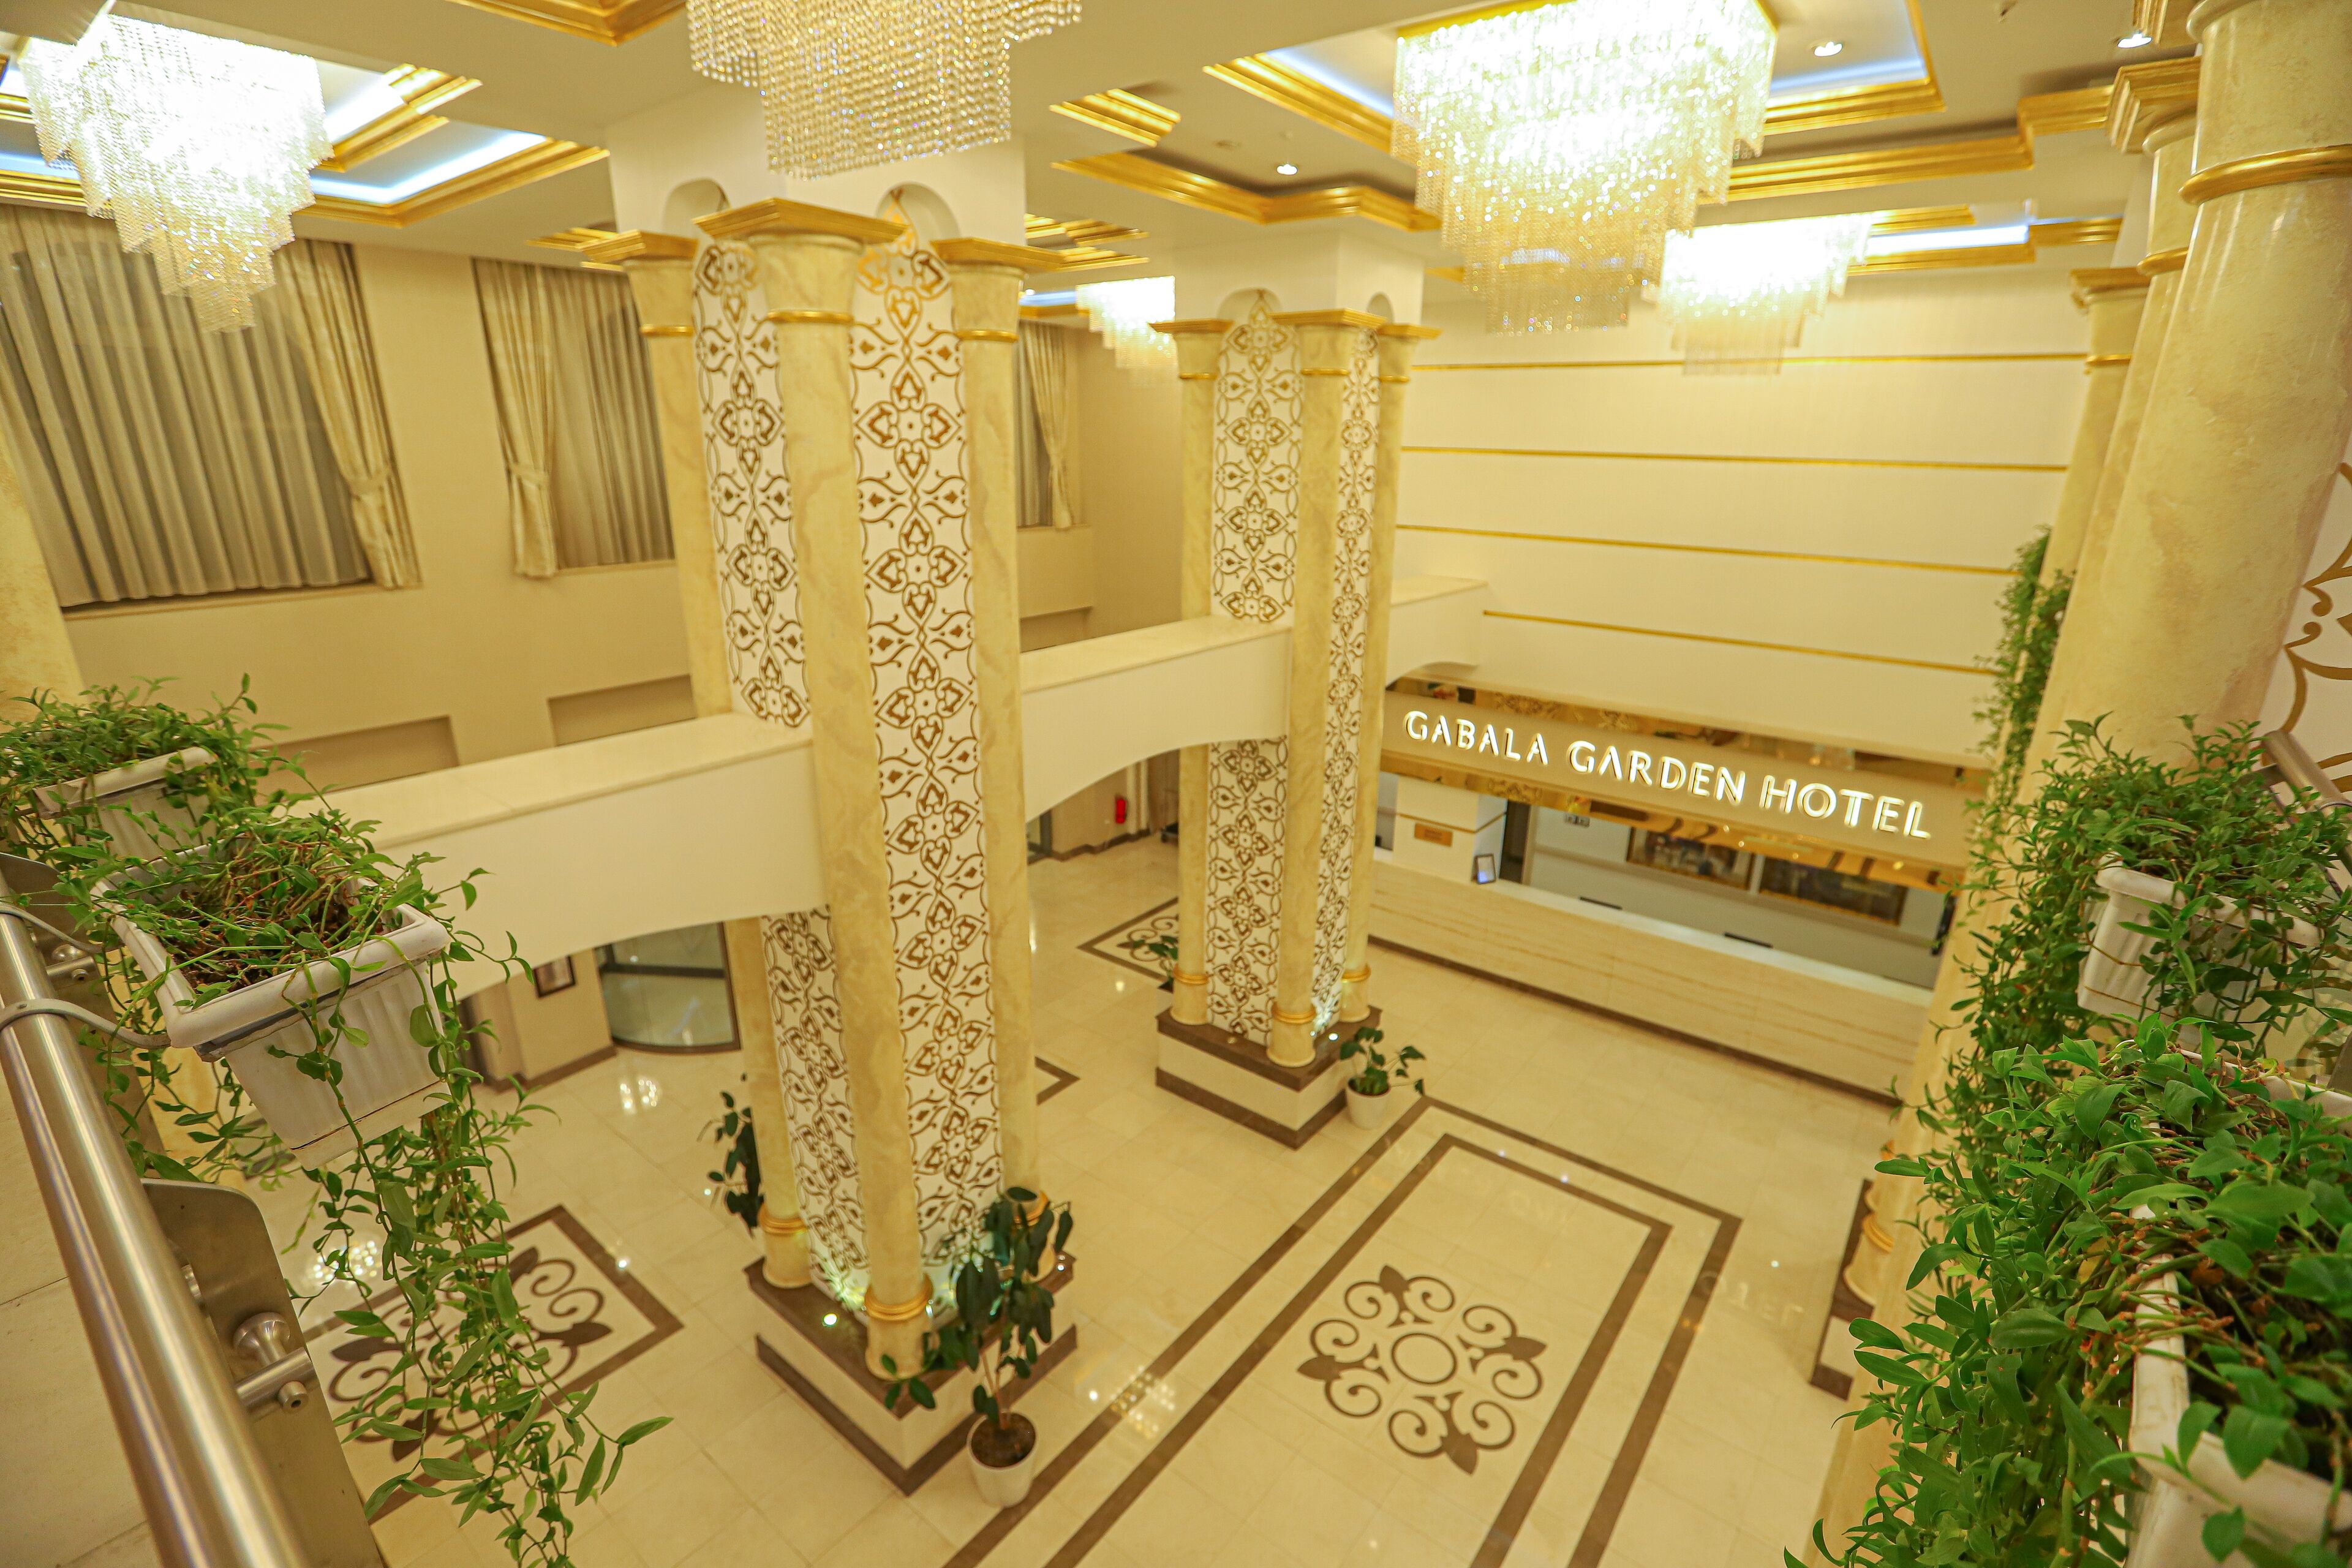 Gabala Garden Hotel